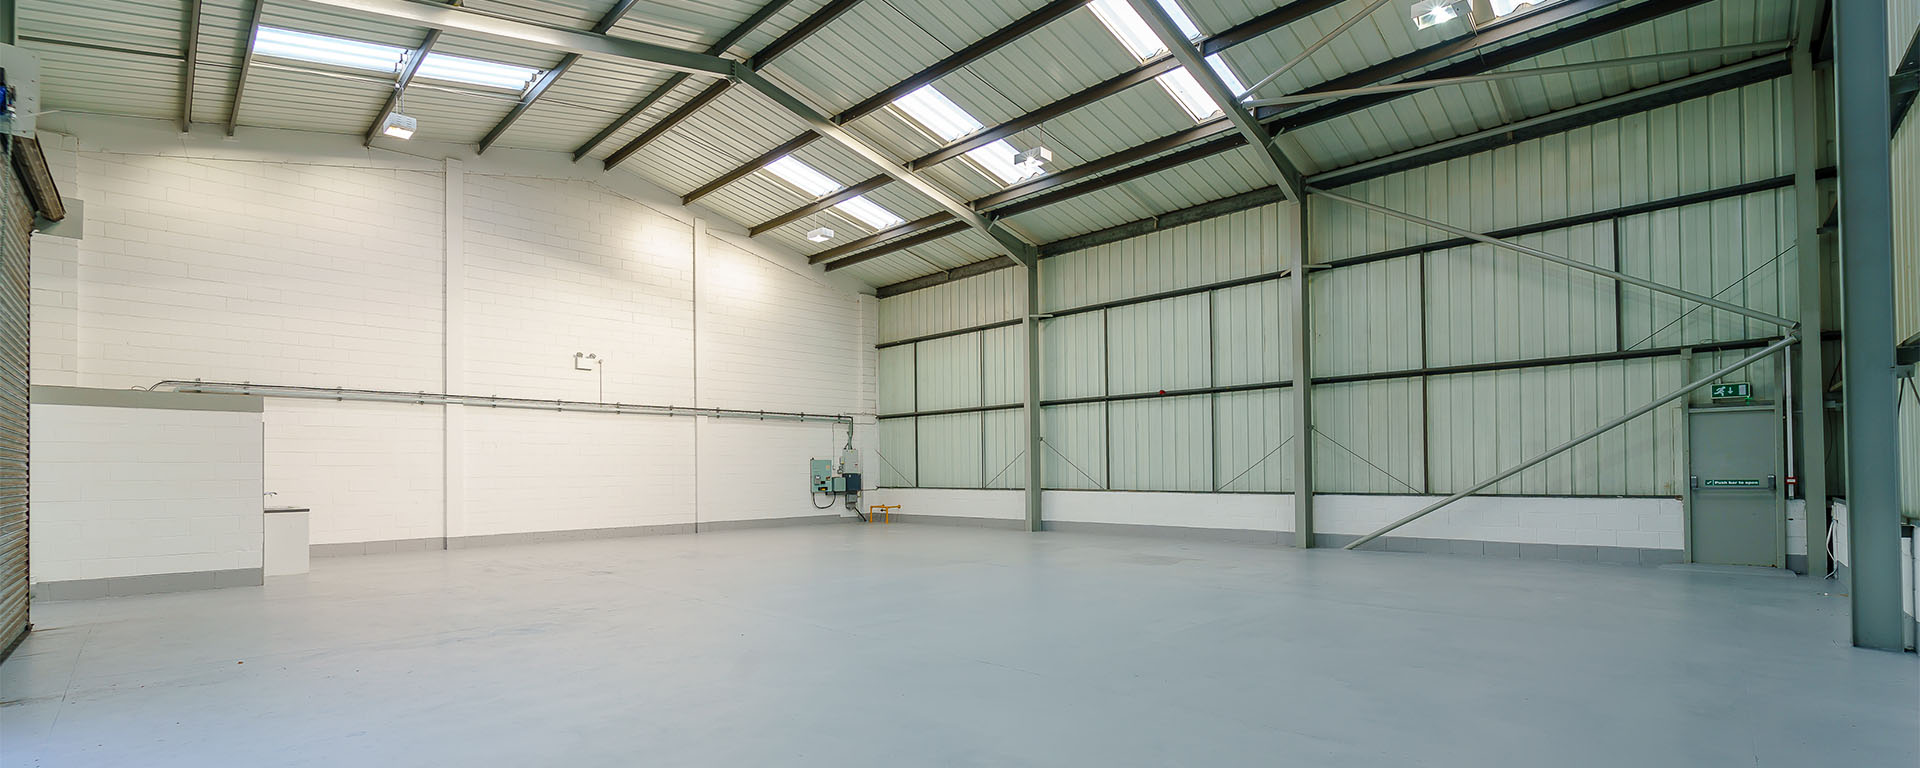 Empty warehouse facility